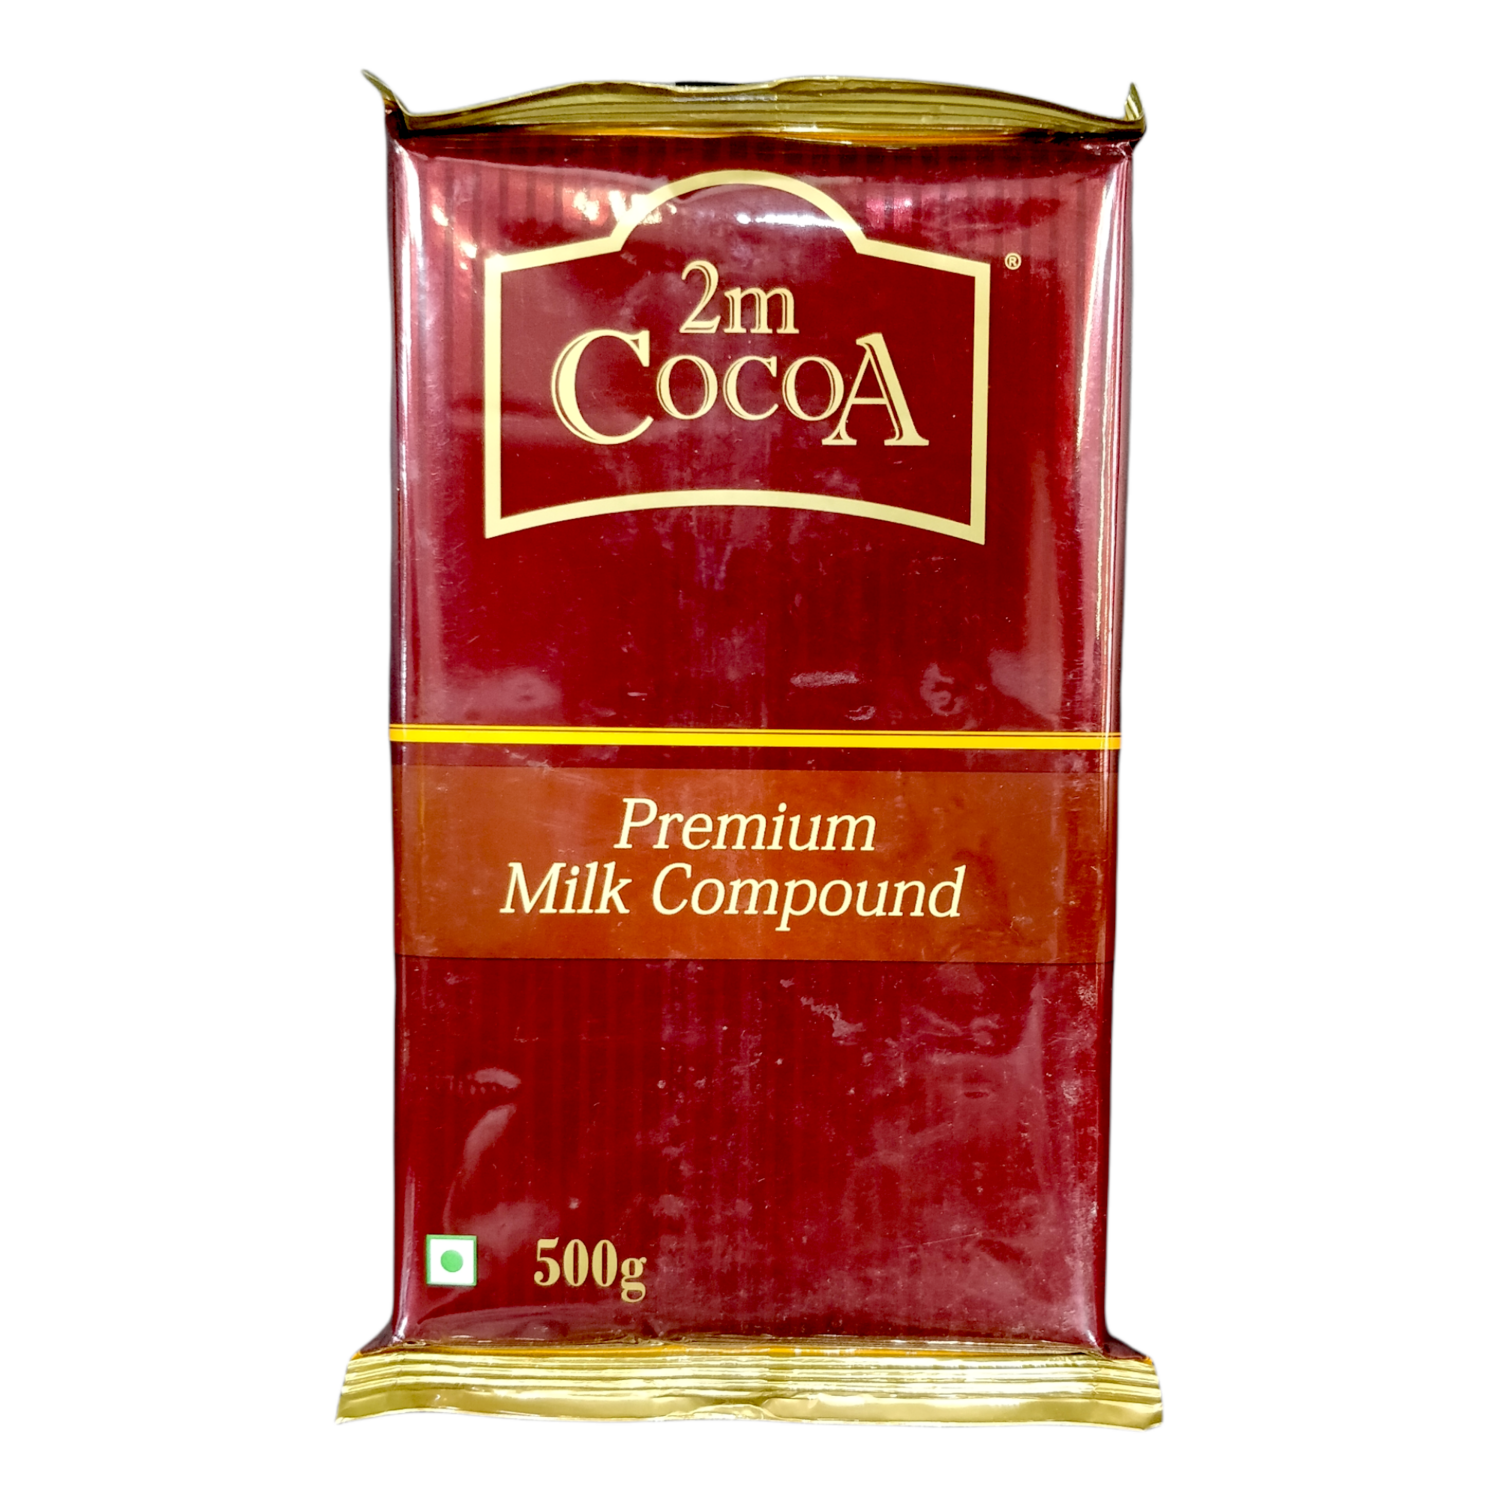 2M Cocoa Premium Milk Compound CP16 500gms